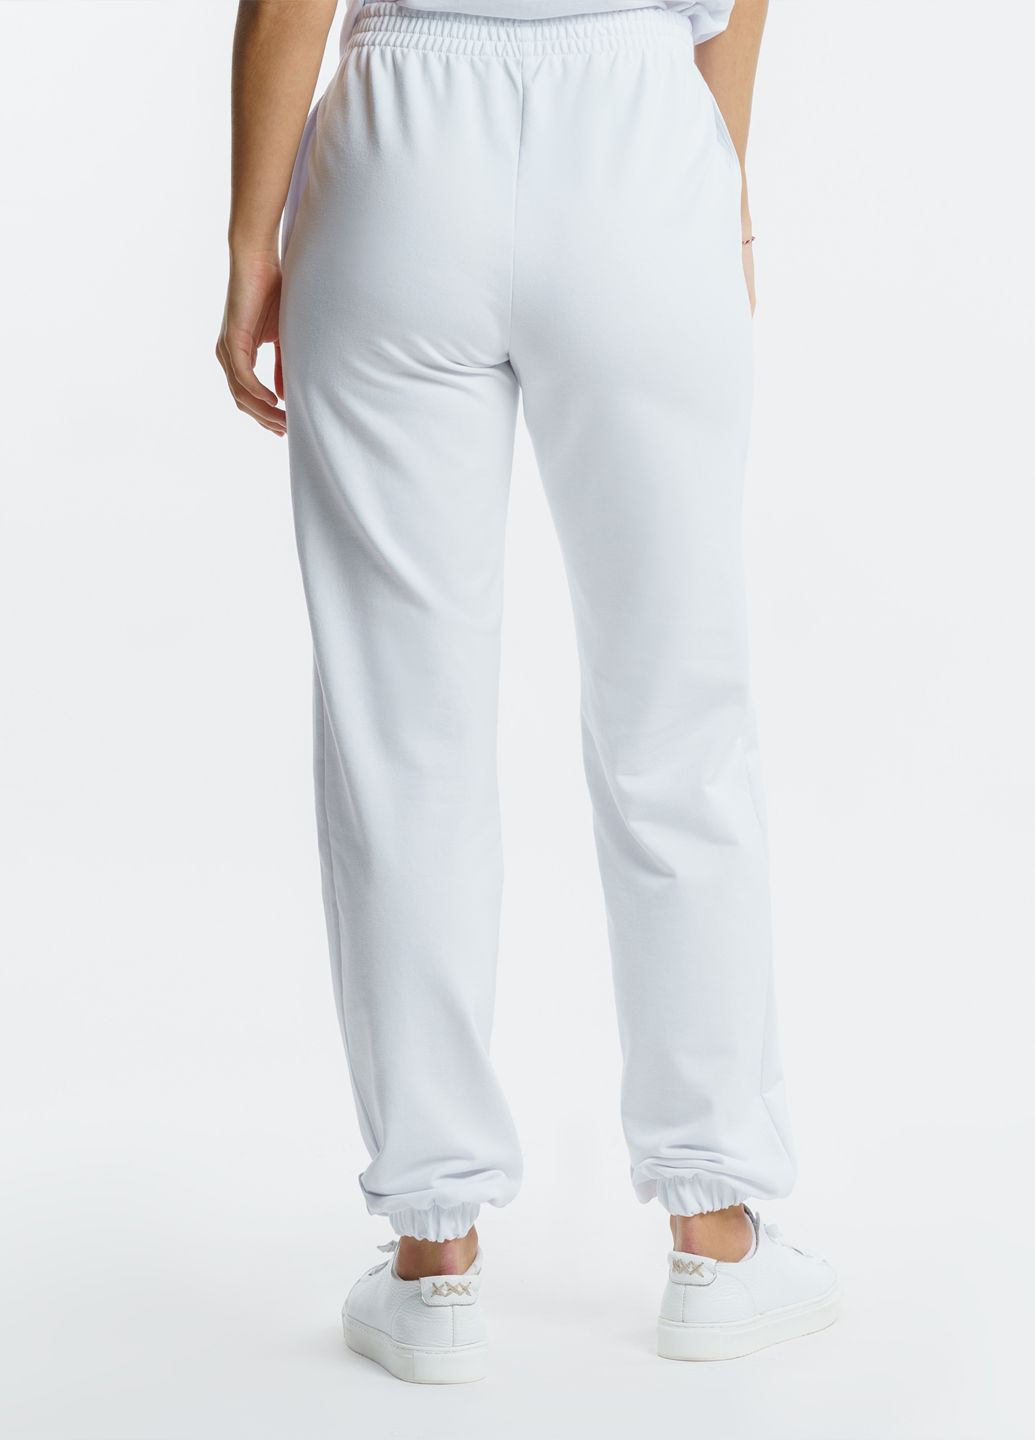 Спортивные брюки женские Freedom белые Arber sportpants w6 (282841898)